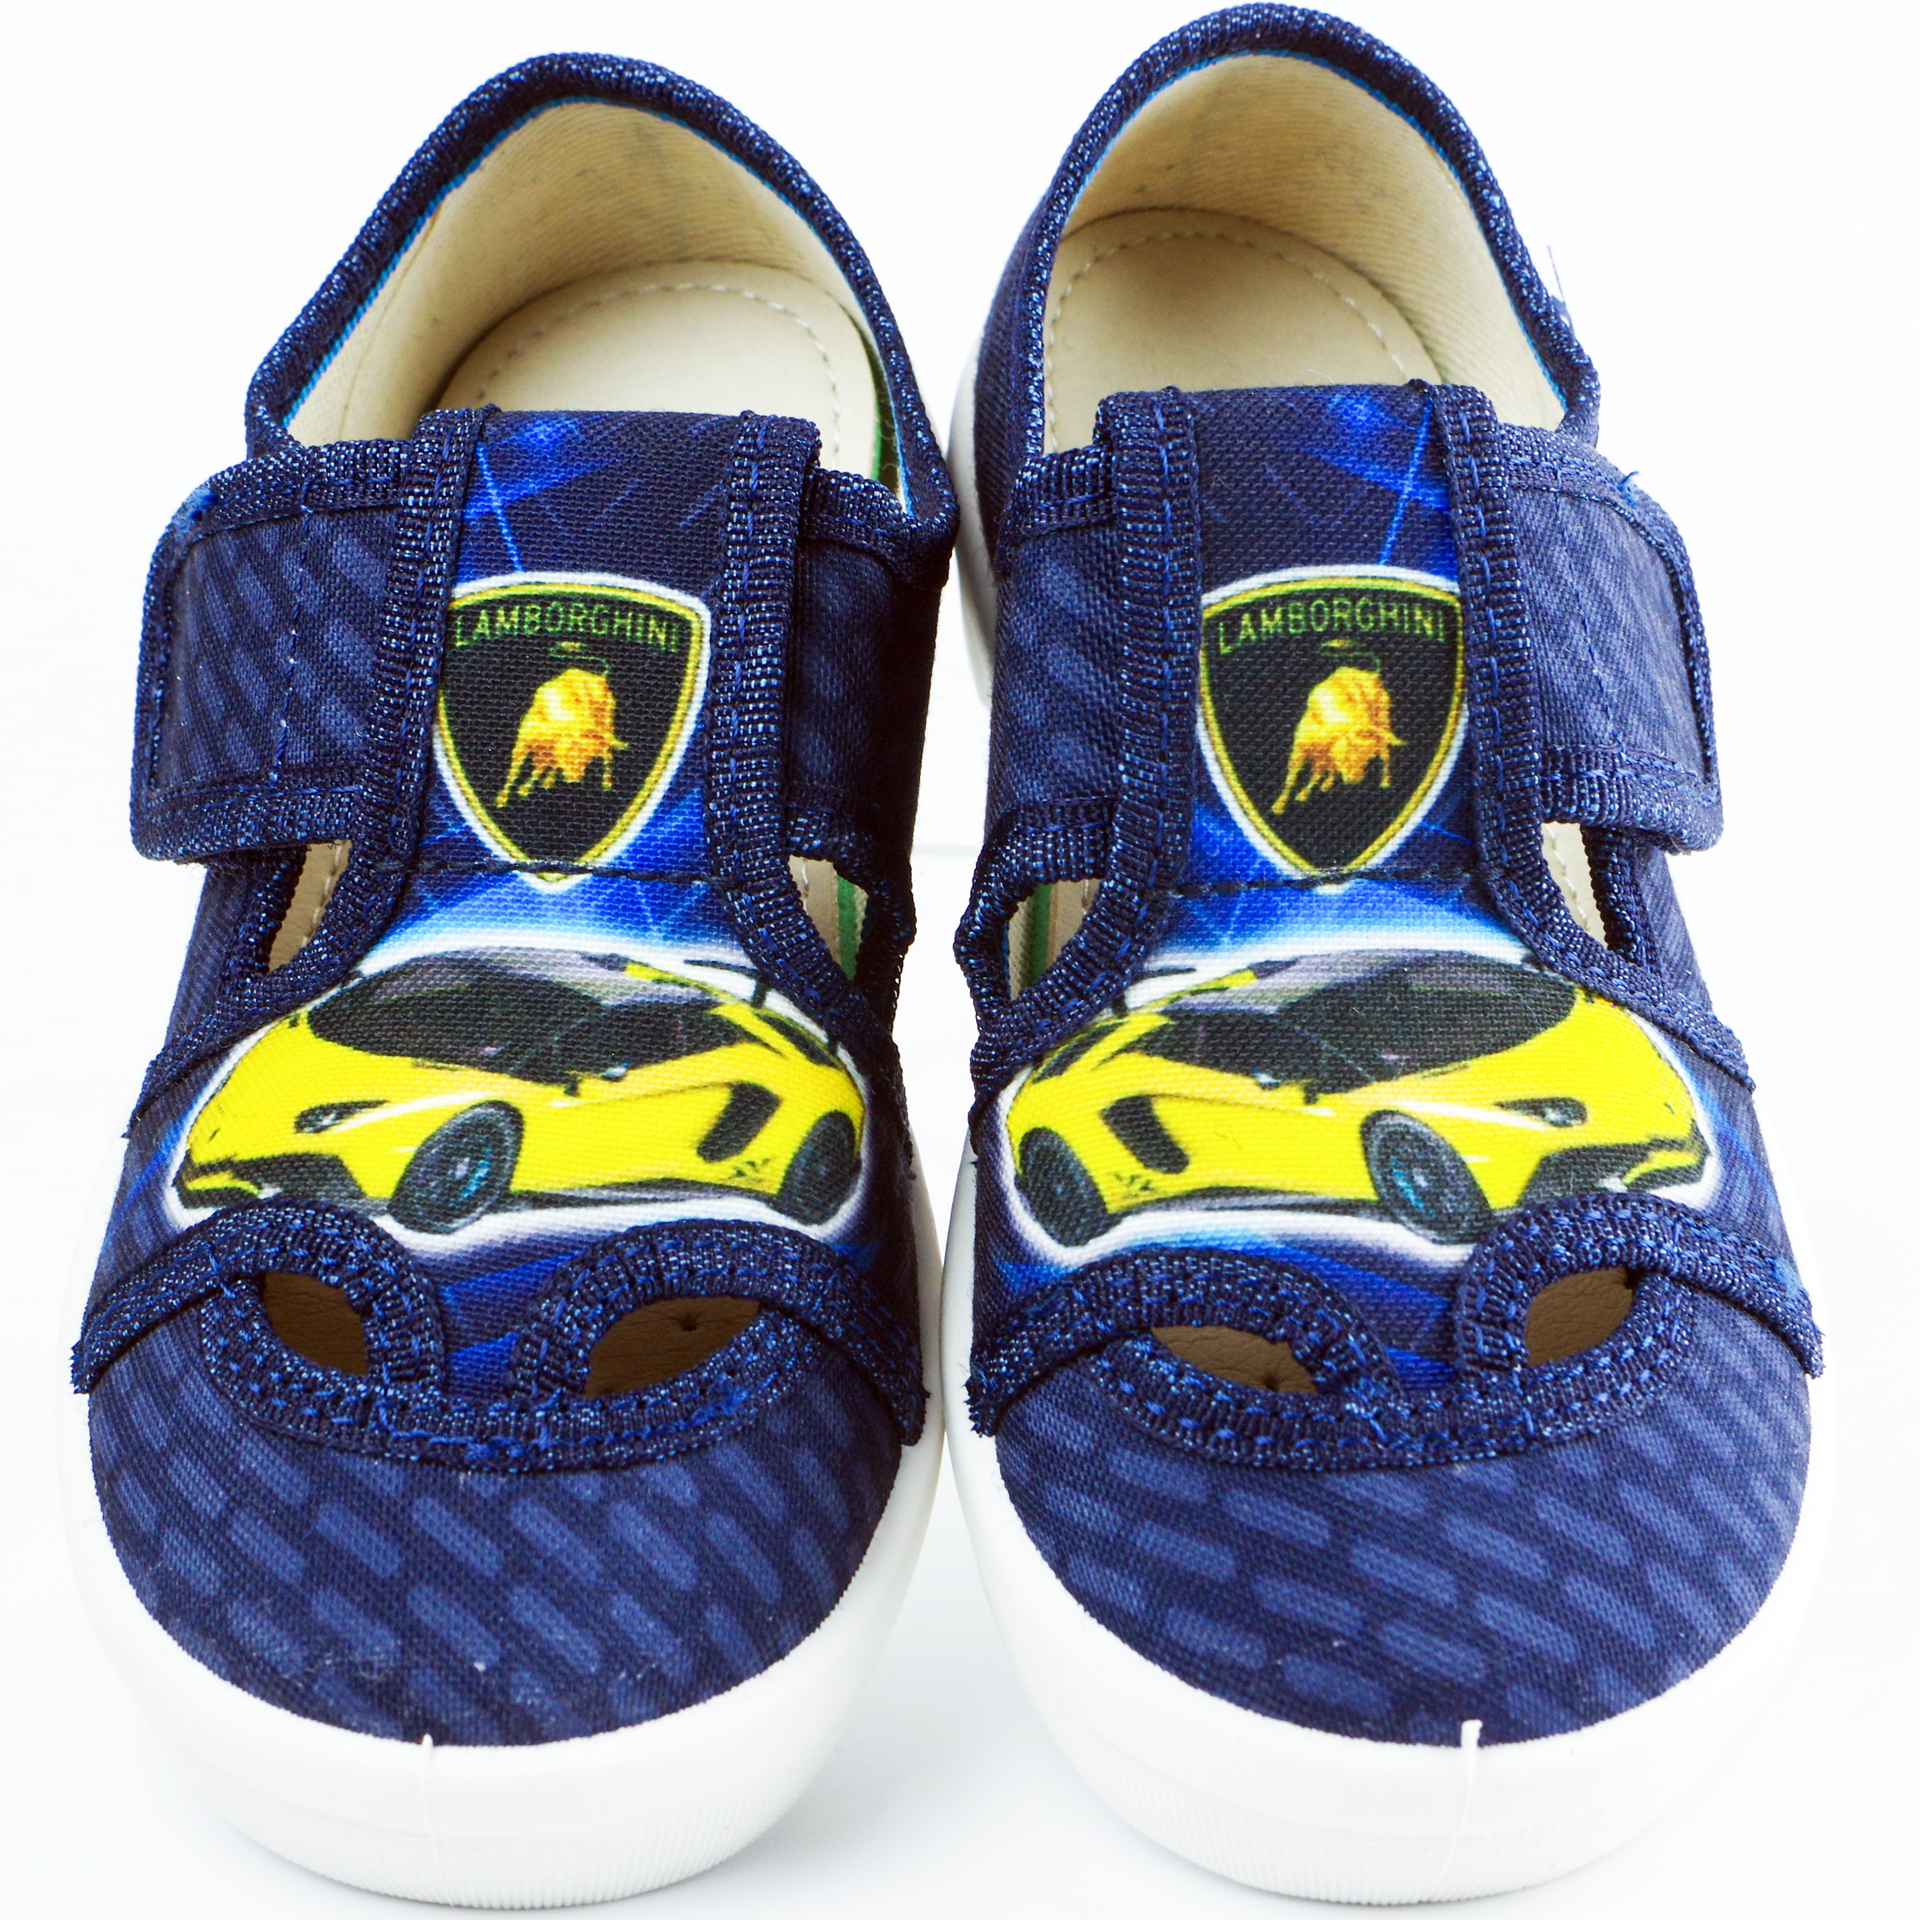 Natur Капці Car (2160) для хлопчика, матеріал Текстиль, Синій колір, 26-32 розміри – Sole Kids. Фото 3